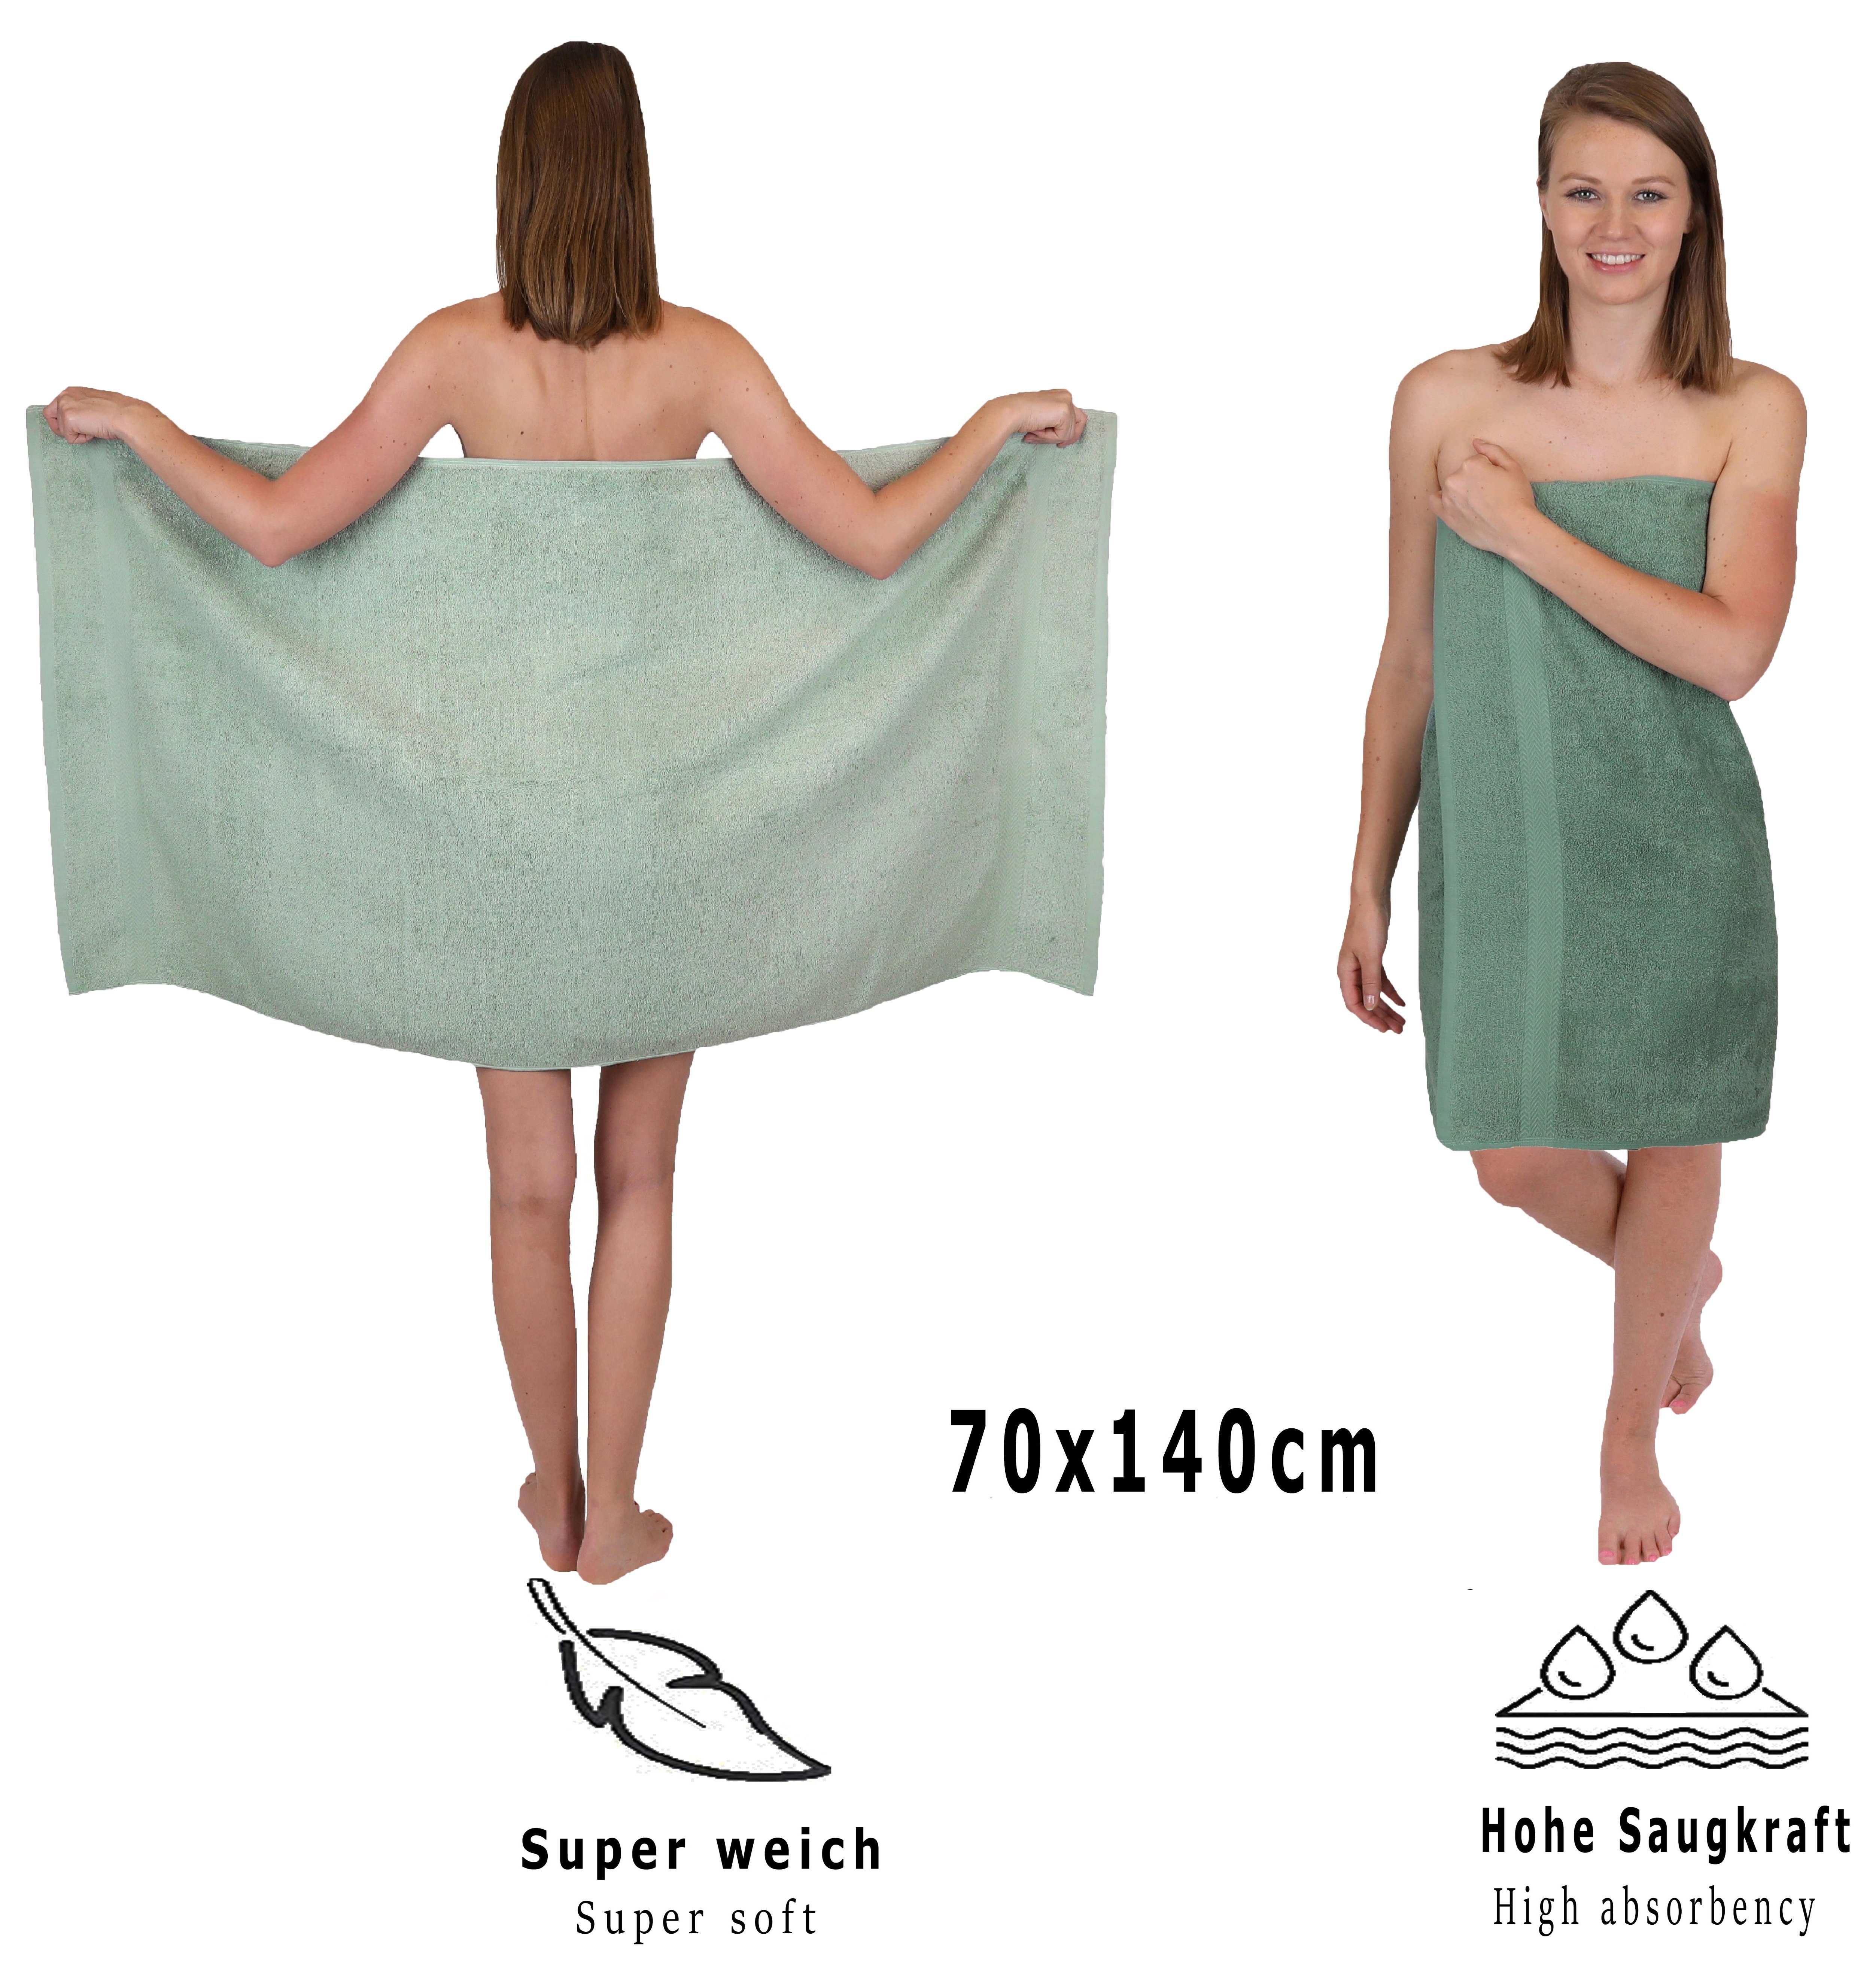 Betz 12-TLG. Set Set Handtuch Handtuch Premium heugrün/tannengrün, (12-tlg) Baumwolle,